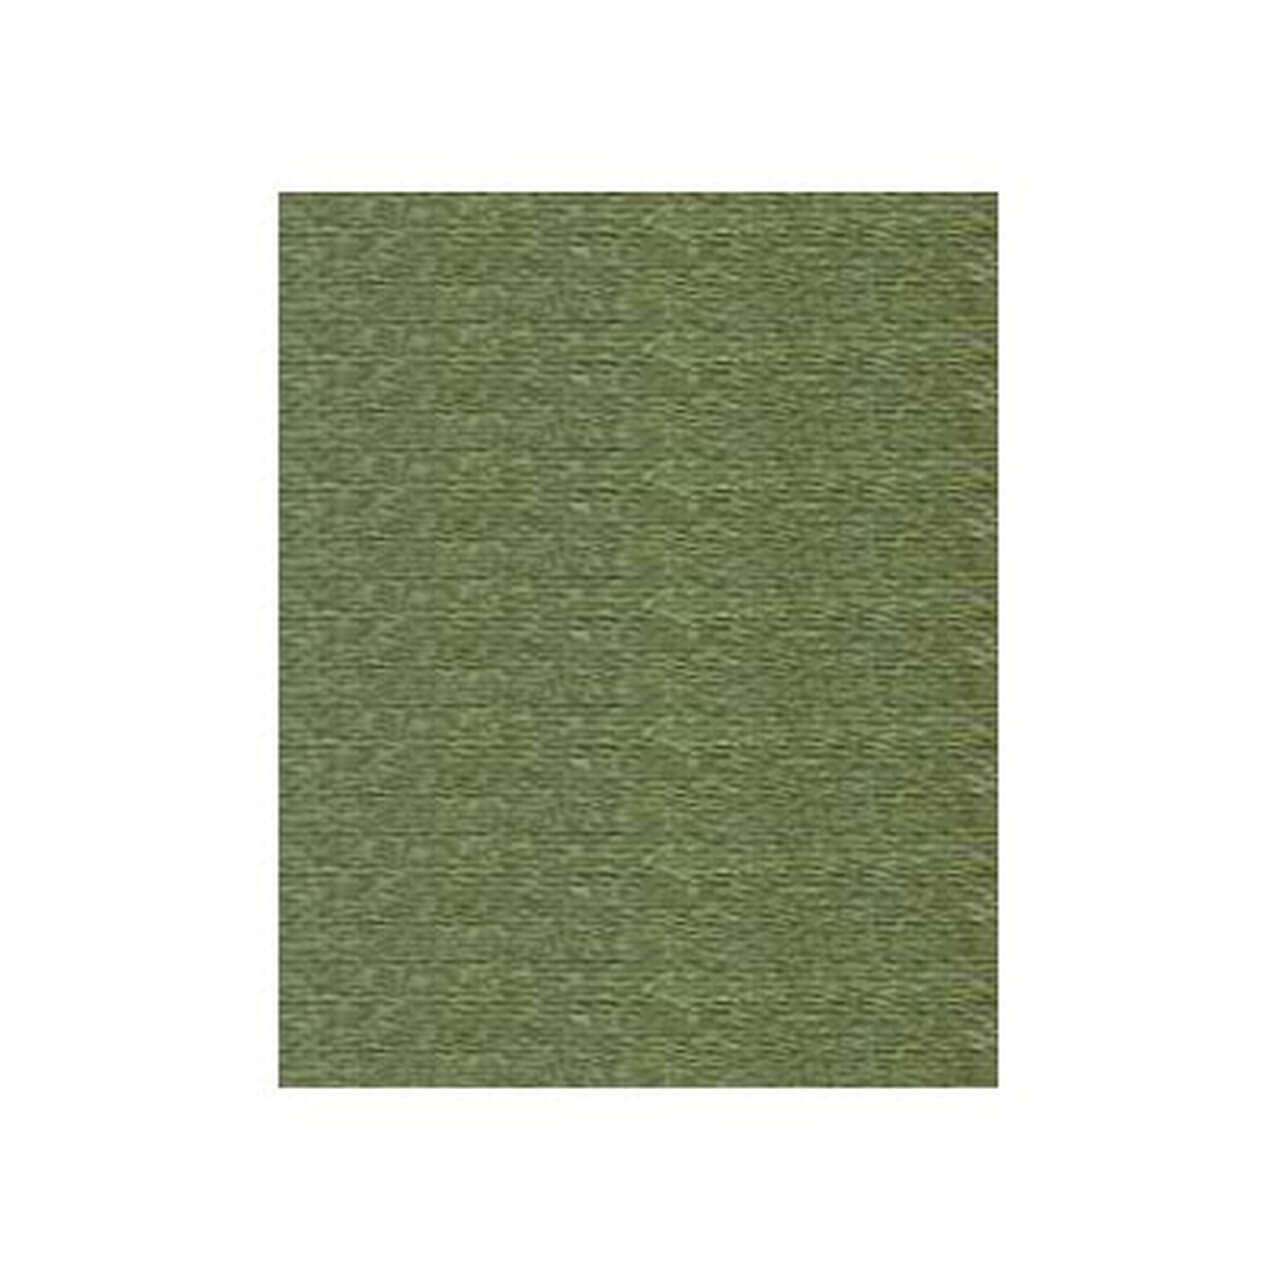 Polyneon - Sewing & Quilting Thread - 440yd Spool - 9845-1750 Emerald